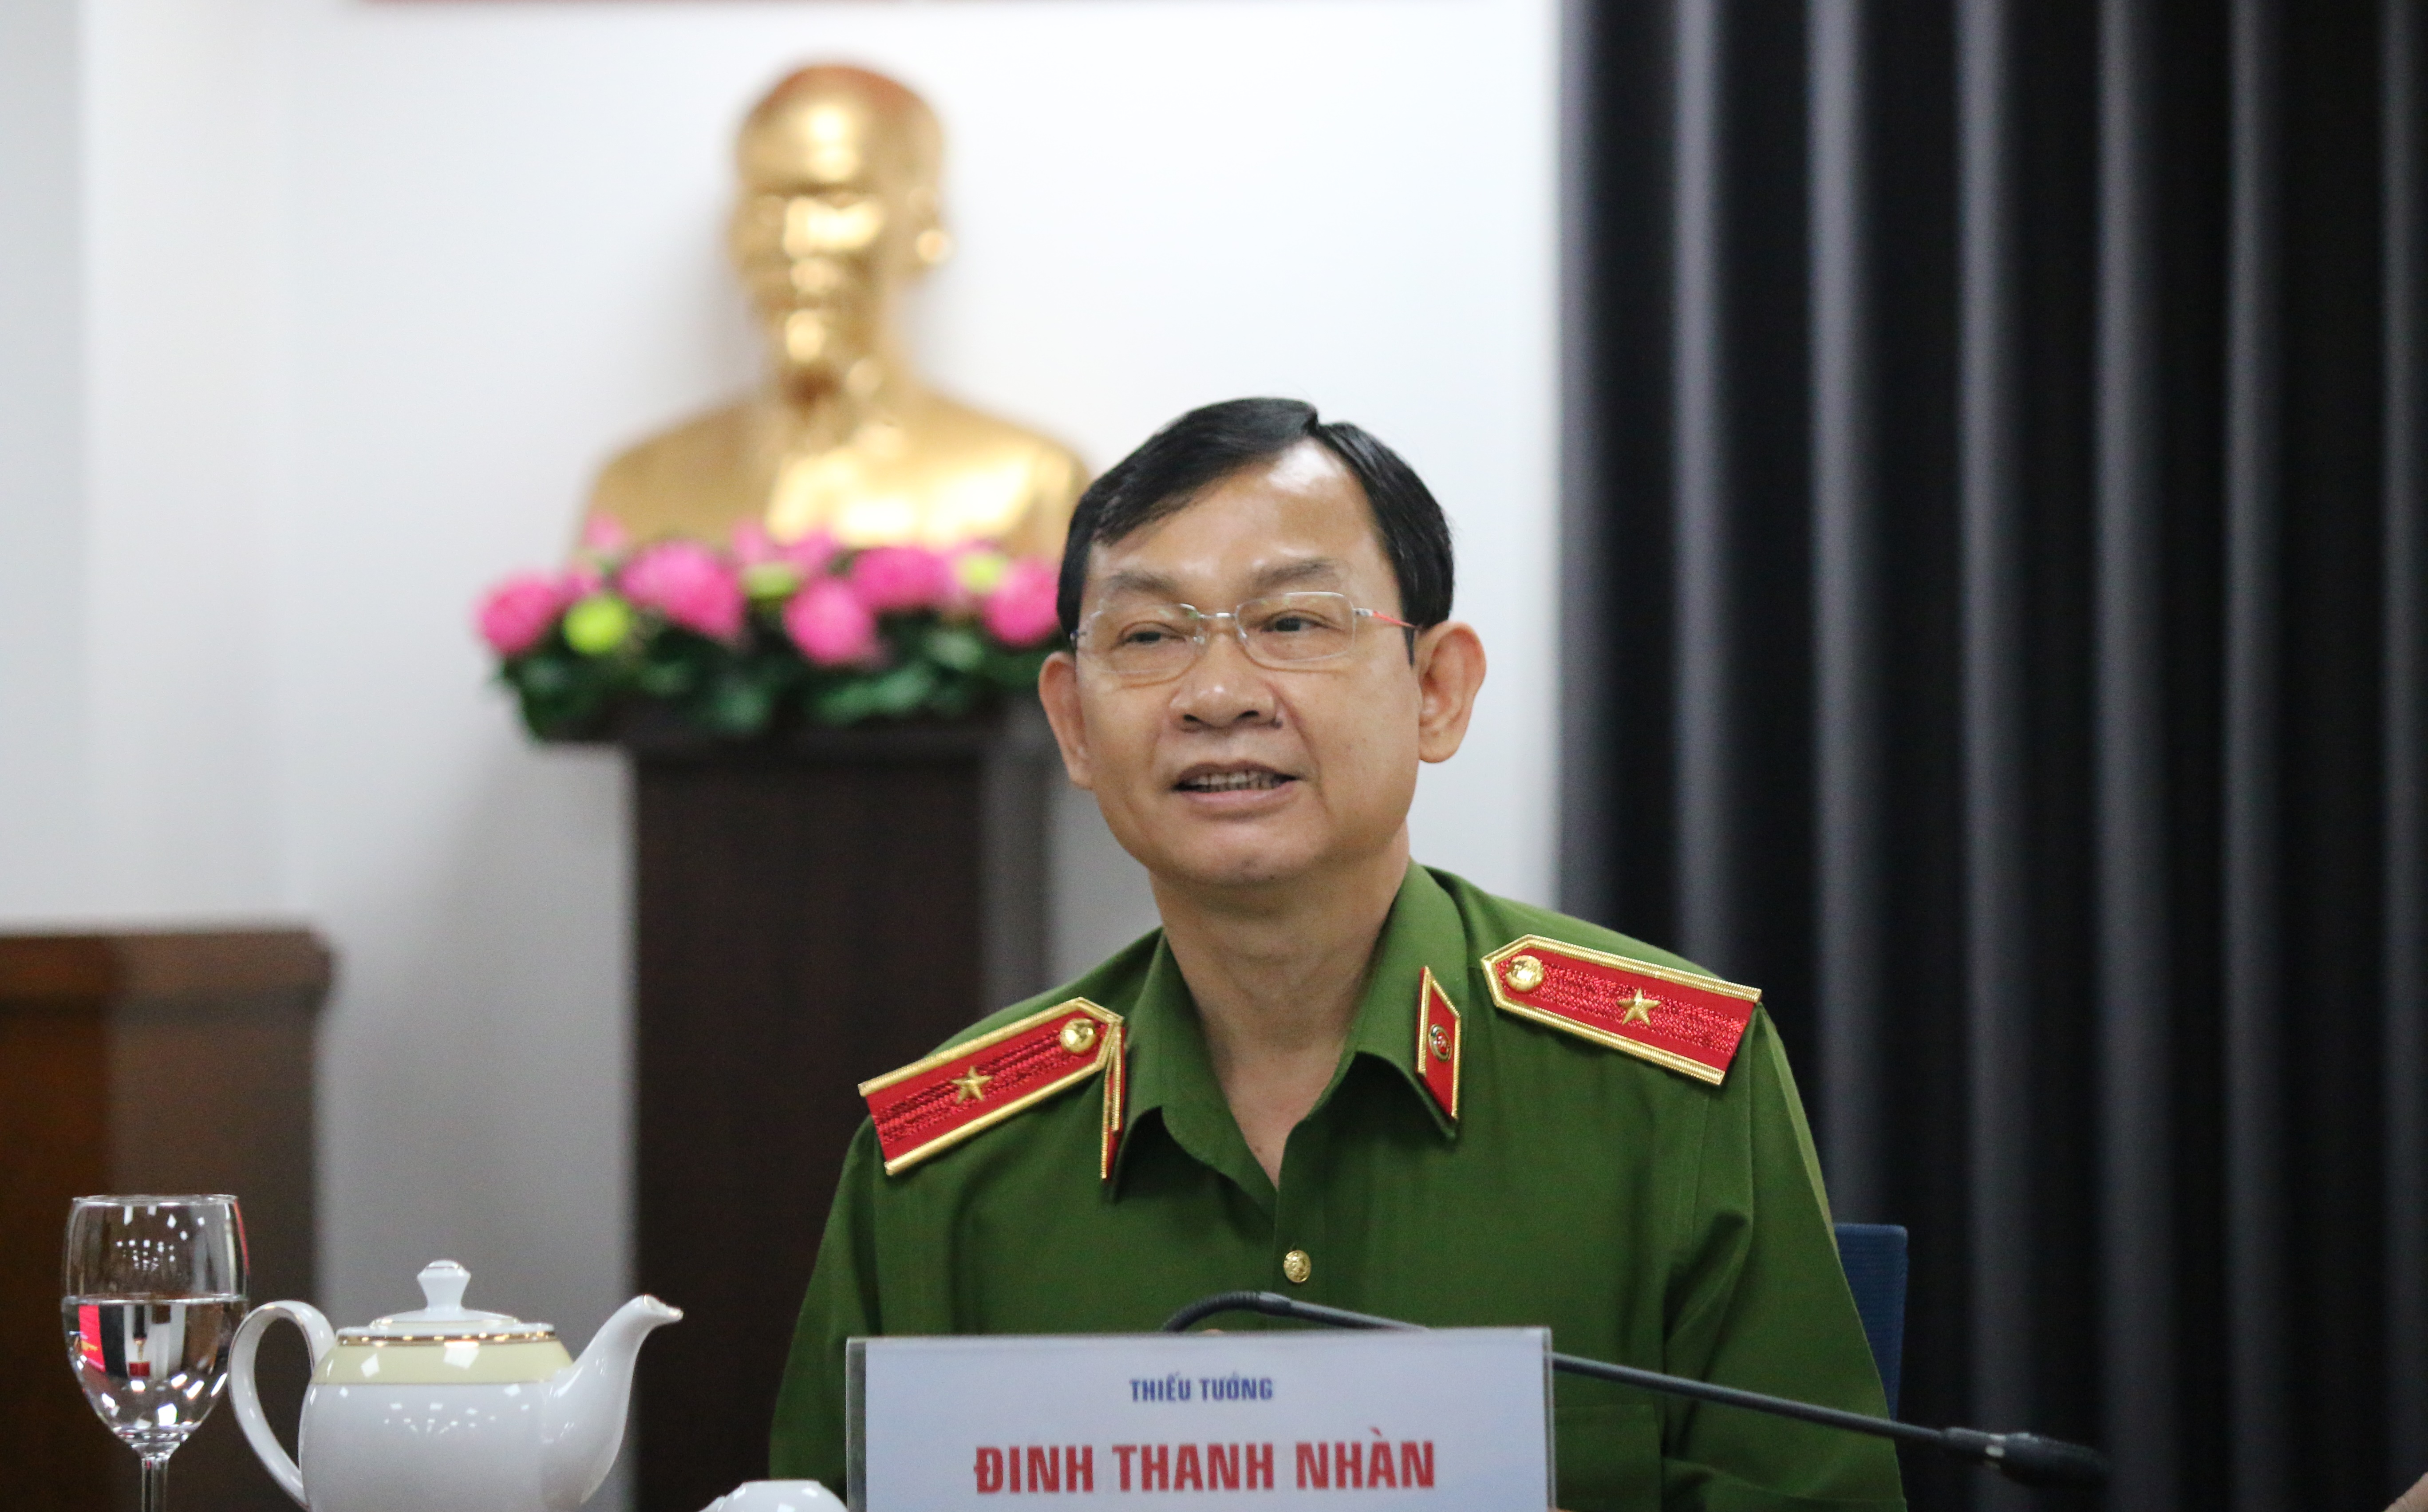 Thiếu tướng Đinh Thanh Nhàn, Phó Giám đốc Công an TPHCM kêu gọi các đối tượng chặn cao tốc TPHCM - Long Thành - Dầu Giây để đua xe vào tối 19.3 nhanh chóng ra trình diện.jpg